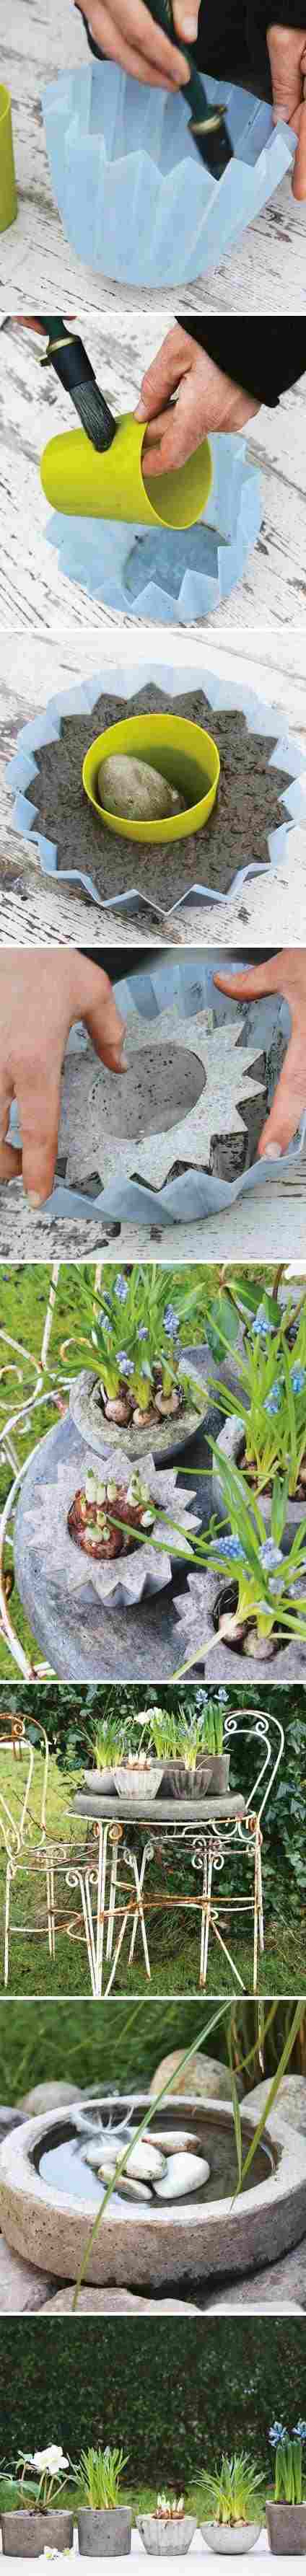 DIY garden decoration ideas concrete flower pots planters